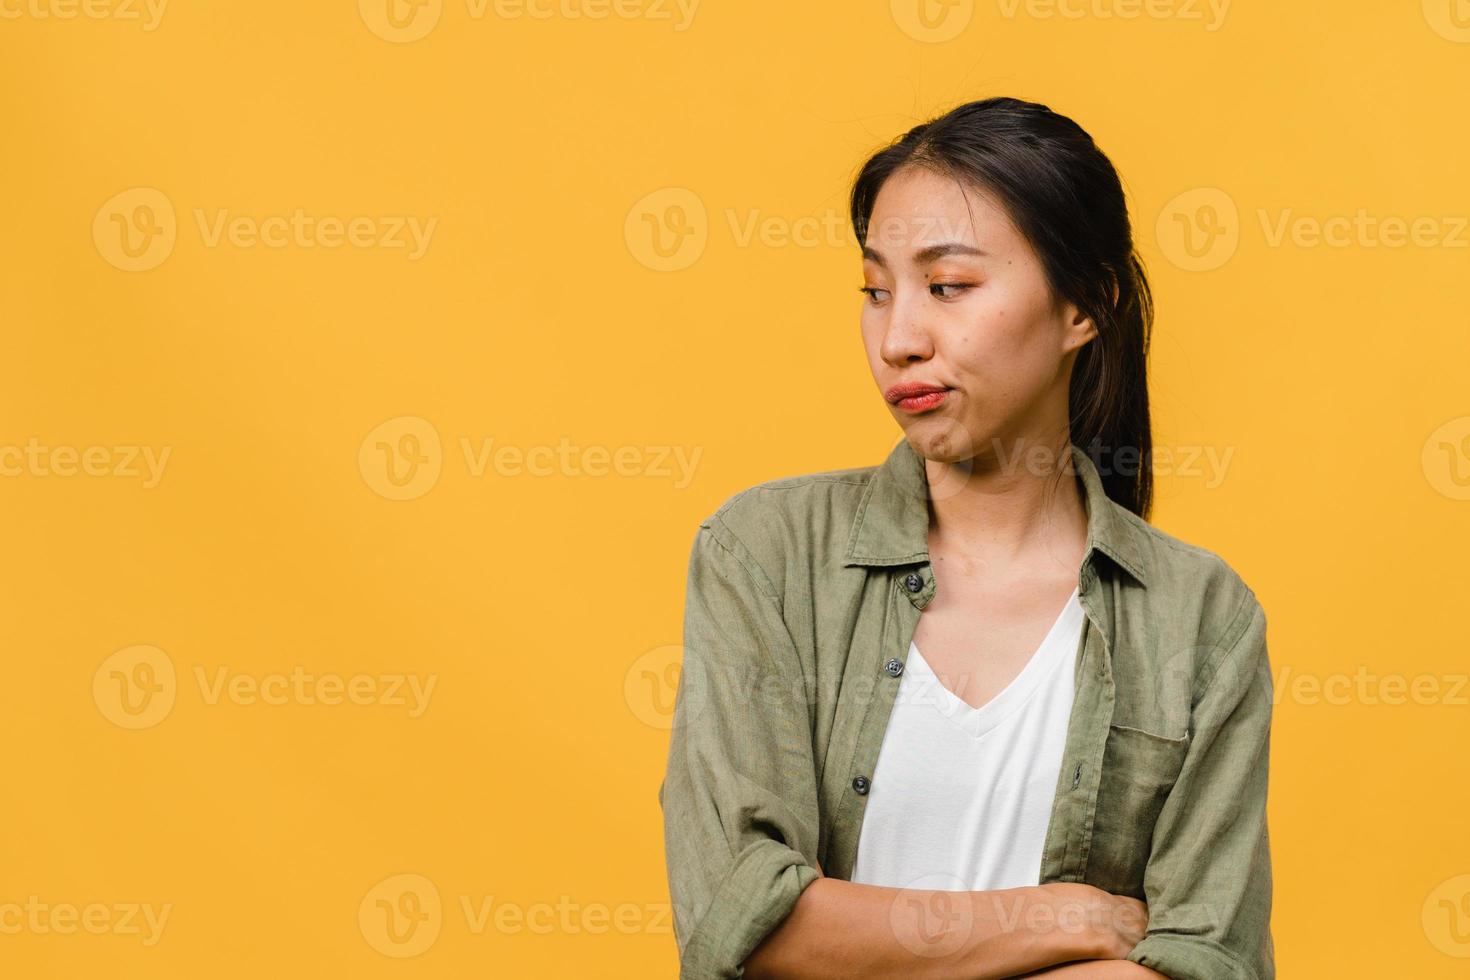 retrato de uma jovem senhora asiática com expressão negativa, animado, gritando, chorando com raiva emocional em roupas casuais, isolado em um fundo amarelo com espaço de cópia em branco. conceito de expressão facial. foto